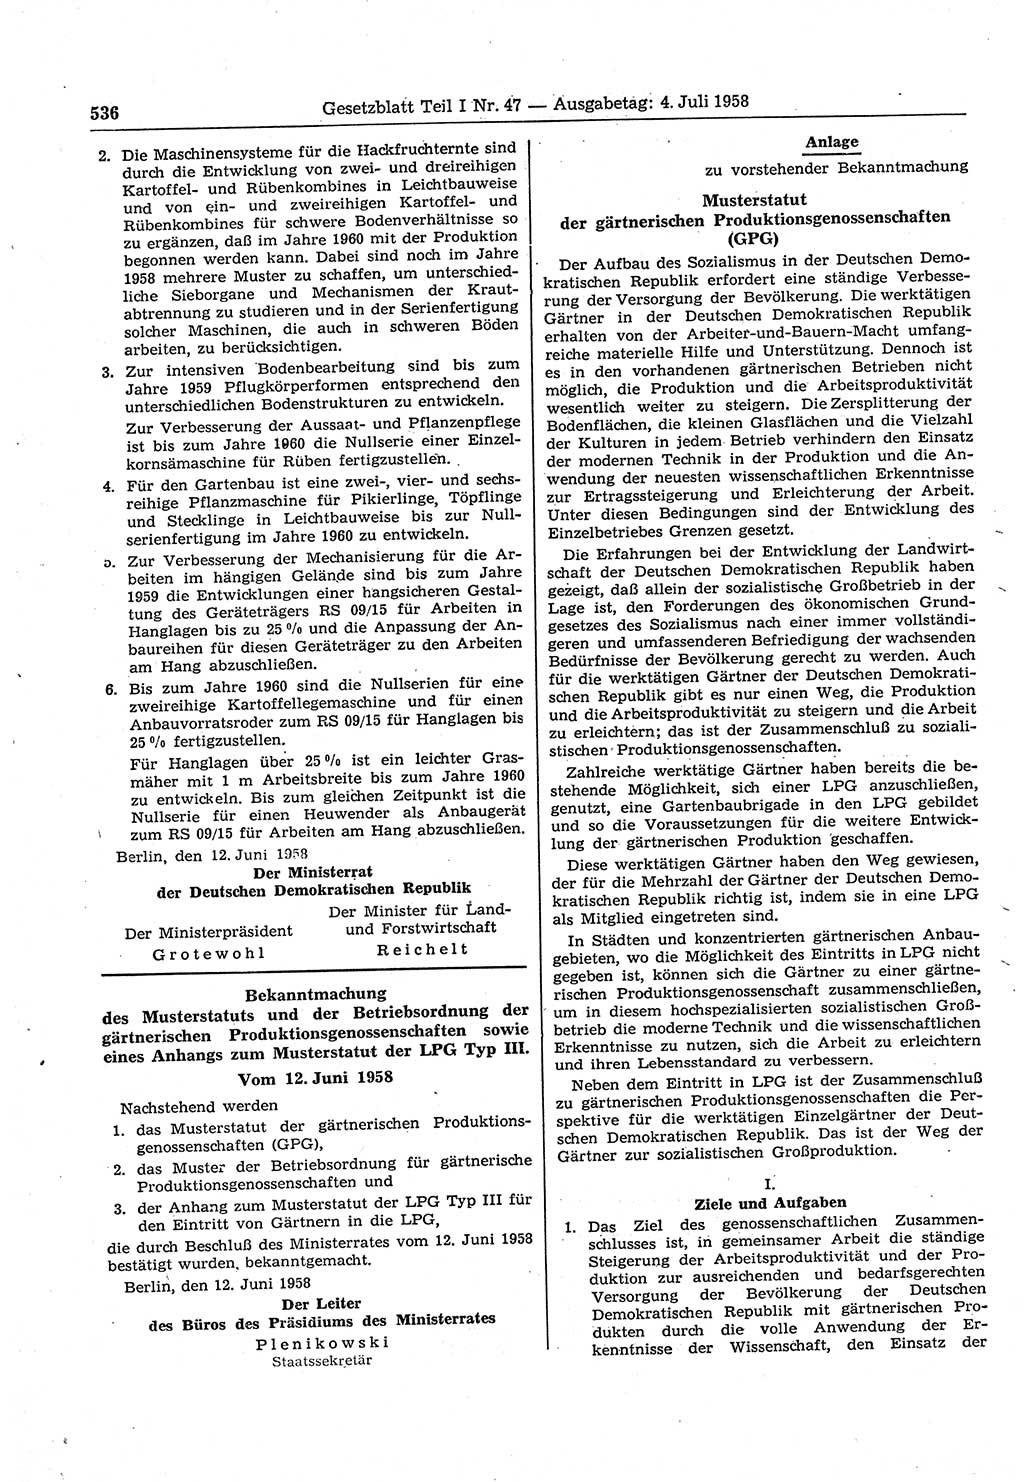 Gesetzblatt (GBl.) der Deutschen Demokratischen Republik (DDR) Teil Ⅰ 1958, Seite 536 (GBl. DDR Ⅰ 1958, S. 536)